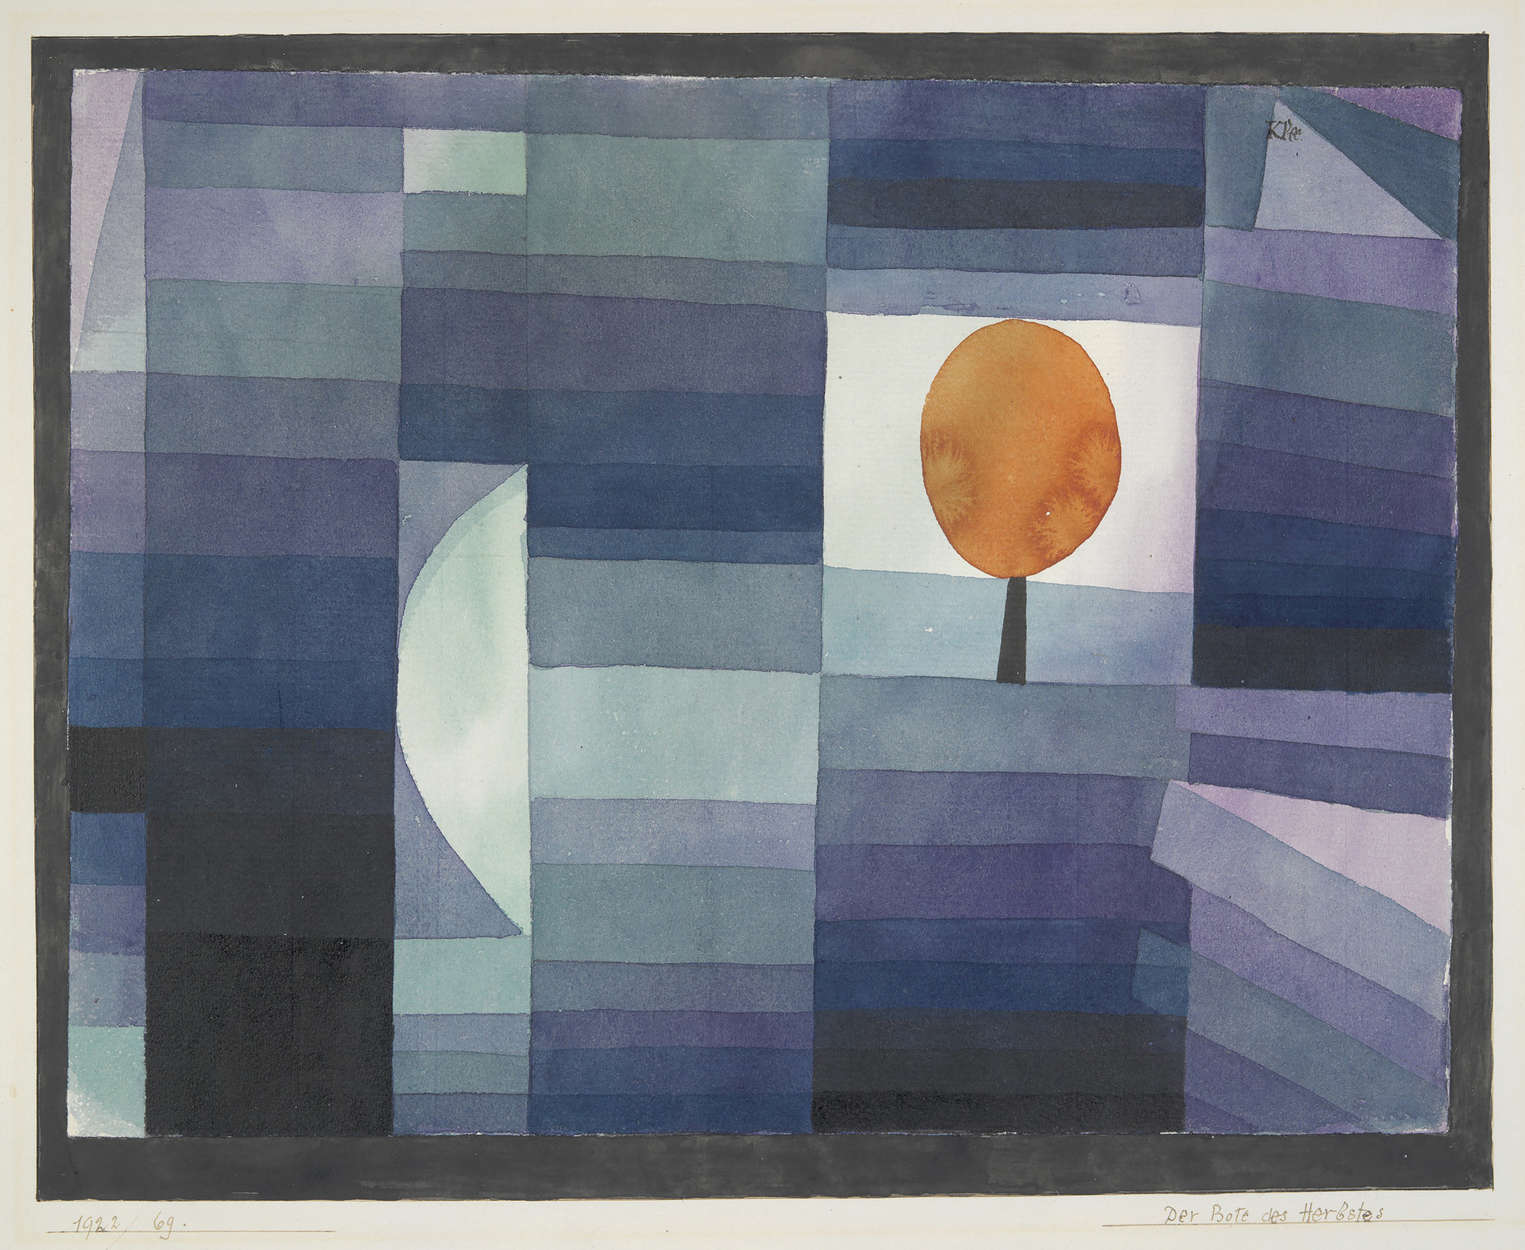             Fototapete "Der Vorbote des Herbstes" von Paul Klee
        